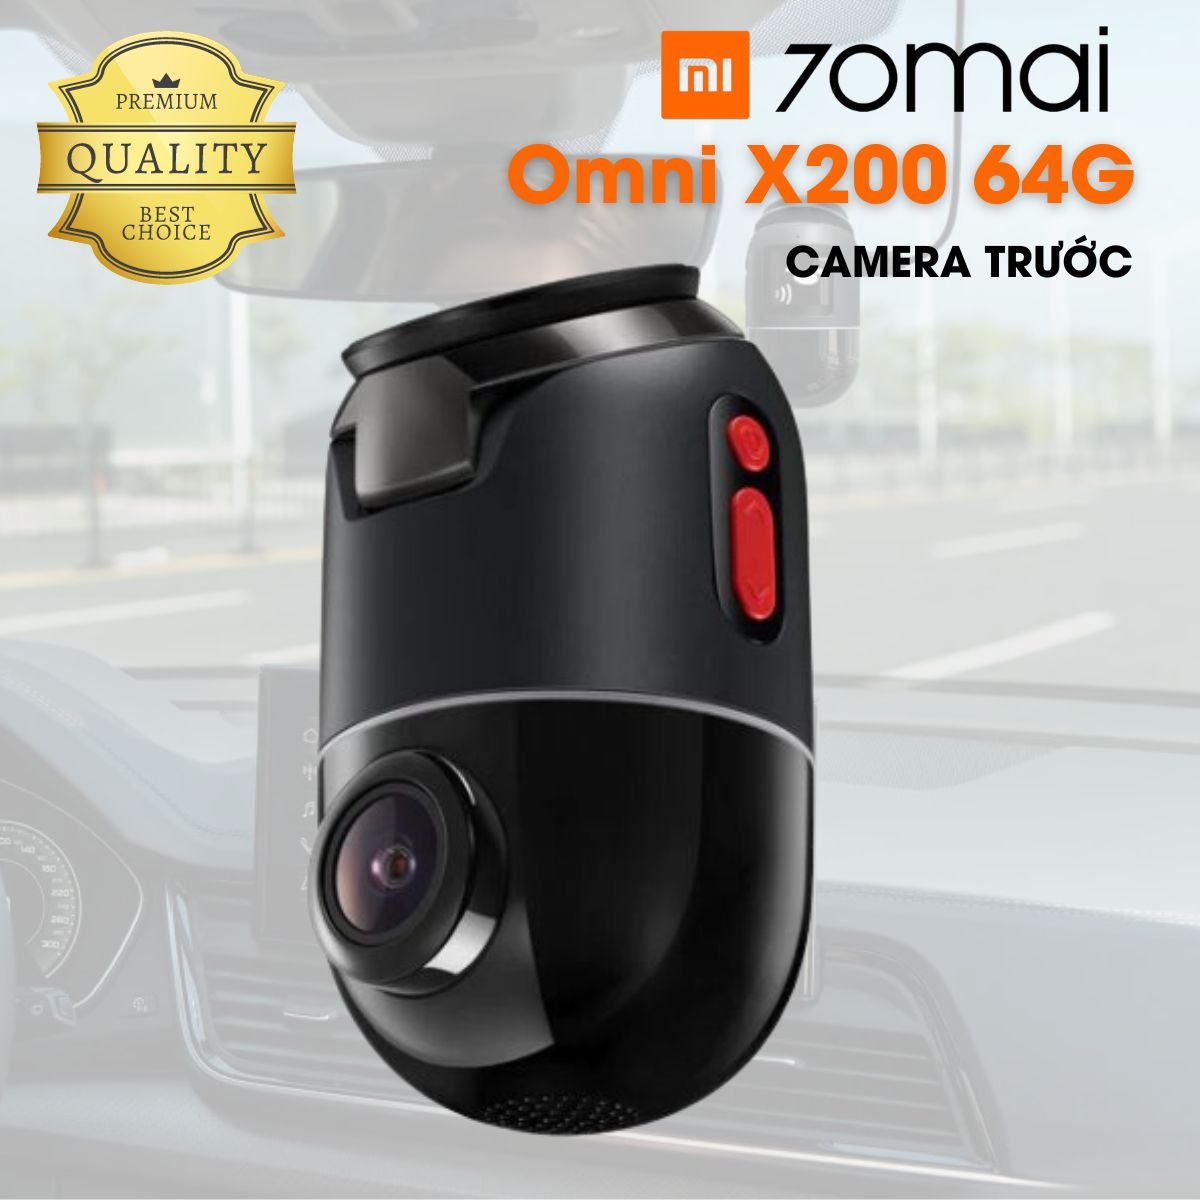 Camera ô tô hành trình 70mai Omni X200 64G (bản trước) Full HD, ghi hình 360 độ, giám sát xe từ xa